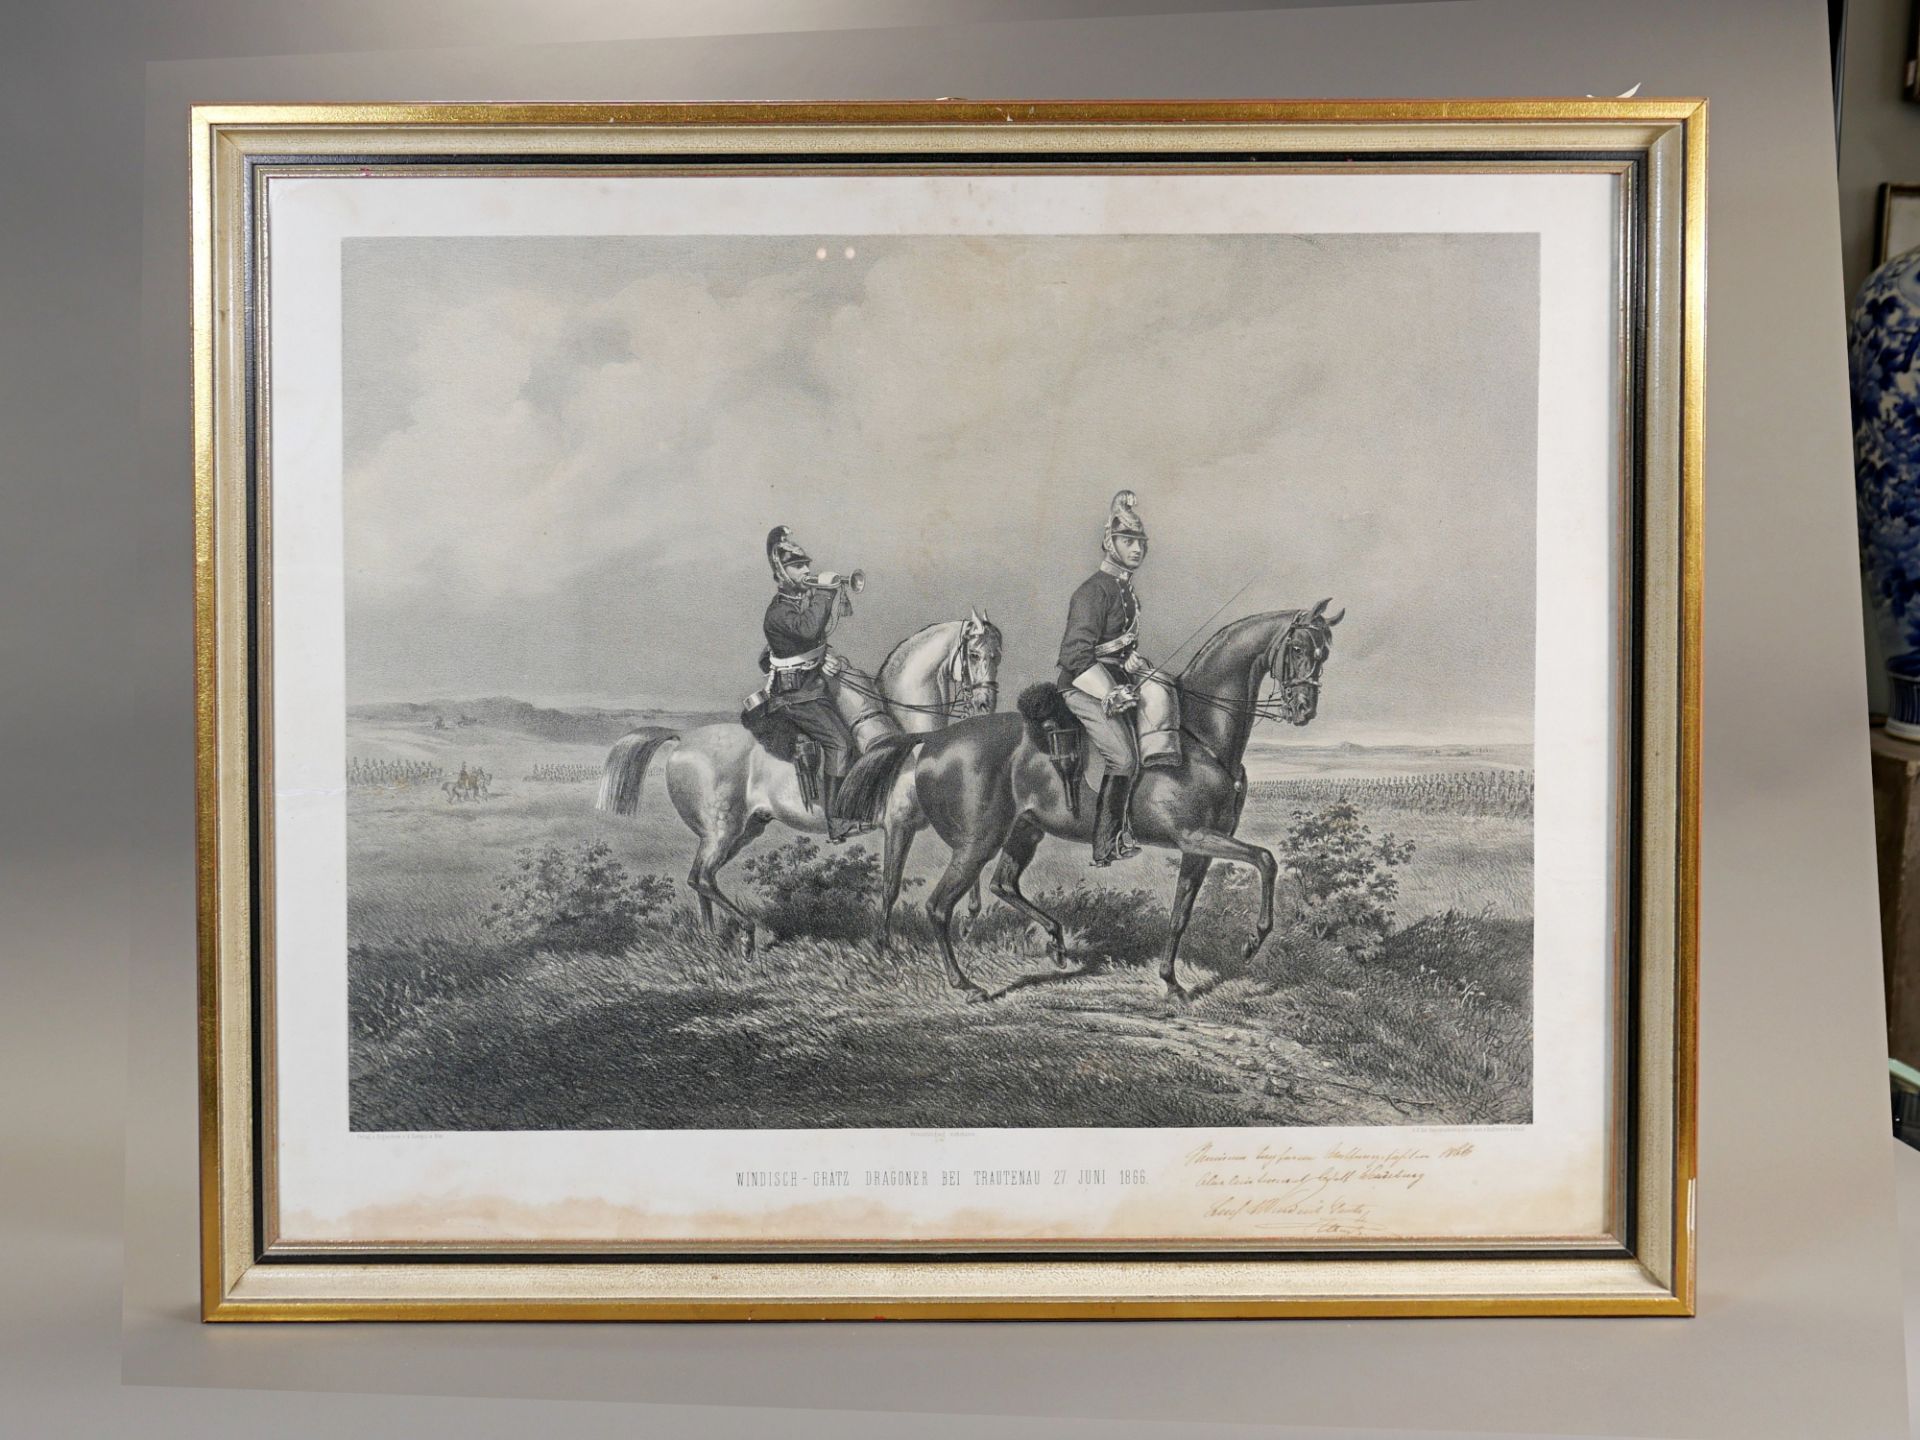 Windisch Grätz Dragoner bei Trautenau am 27. Juni 1866 - Image 2 of 3